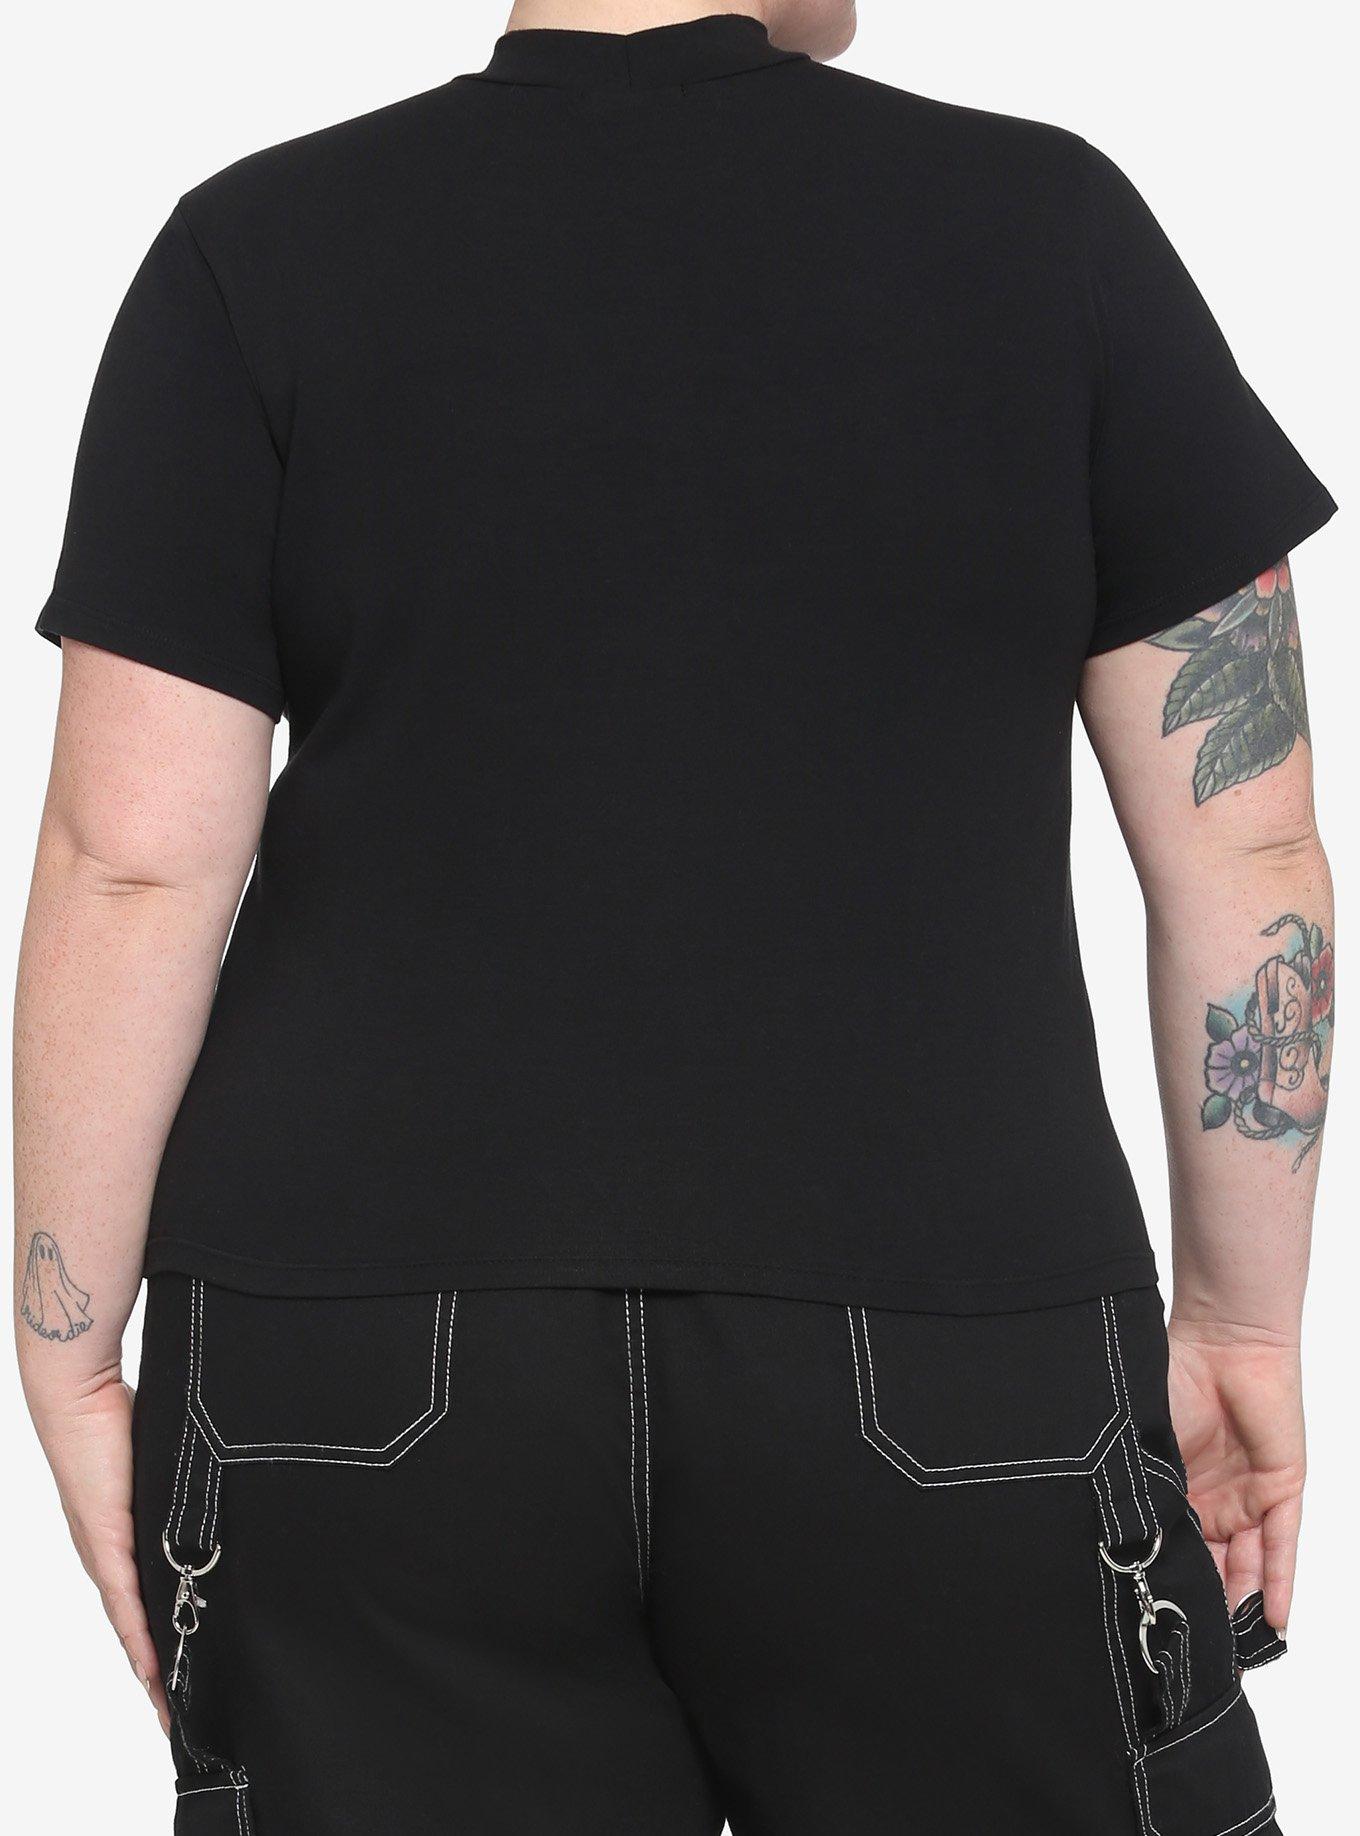 Black Lace-Up Cutout Girls Crop T-Shirt Plus Size, BLACK, alternate